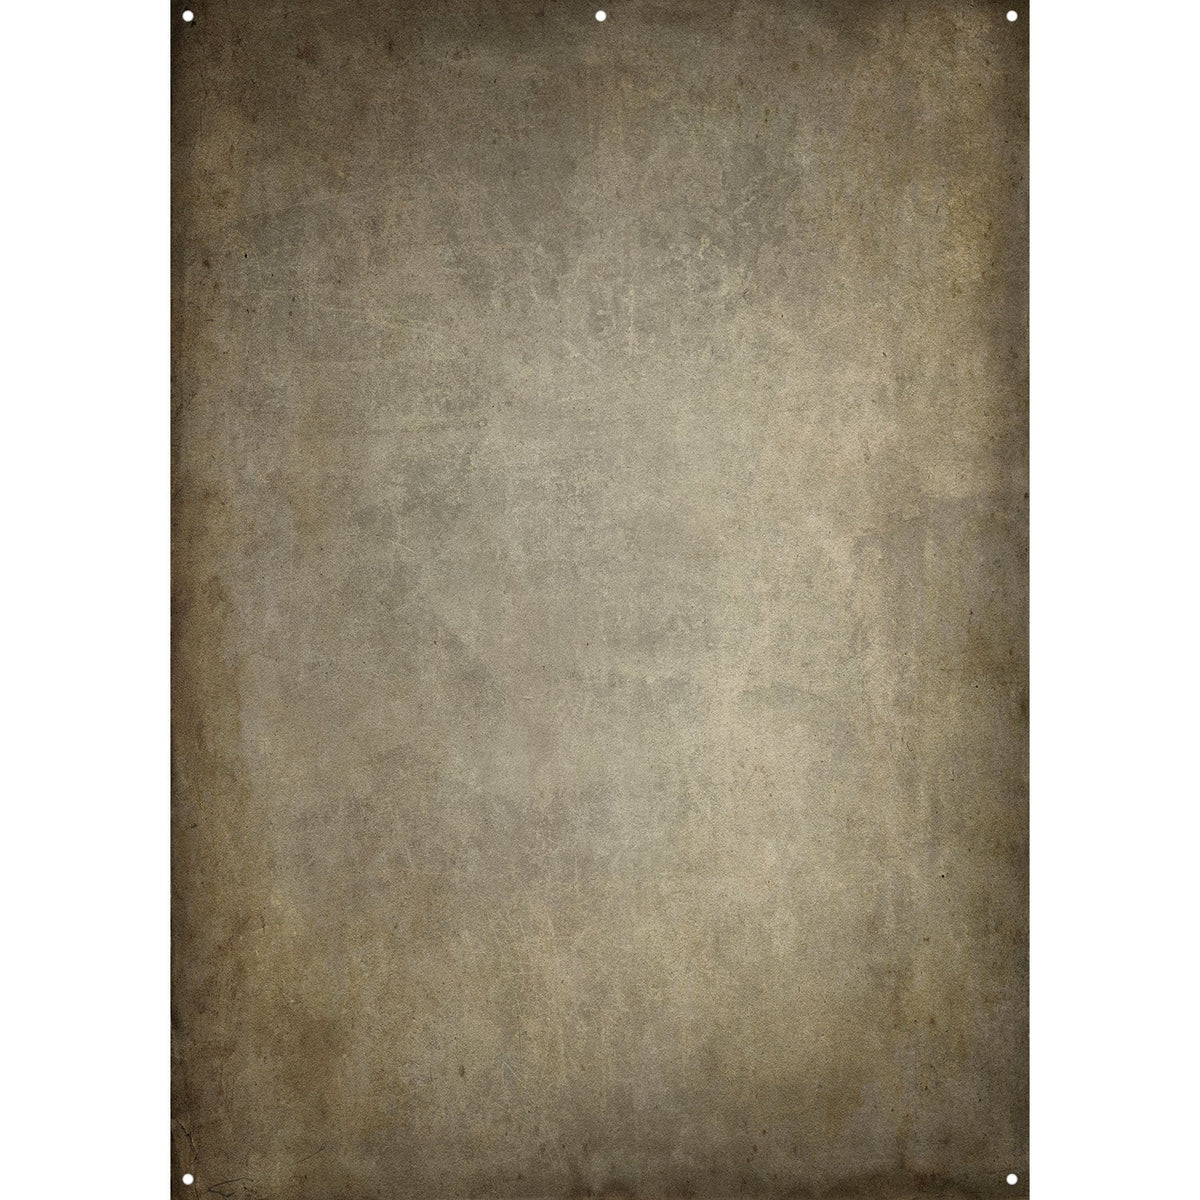 X-Drop Fabric Backdrop - Parchment Paper by Joel Grimes (5' x 7')